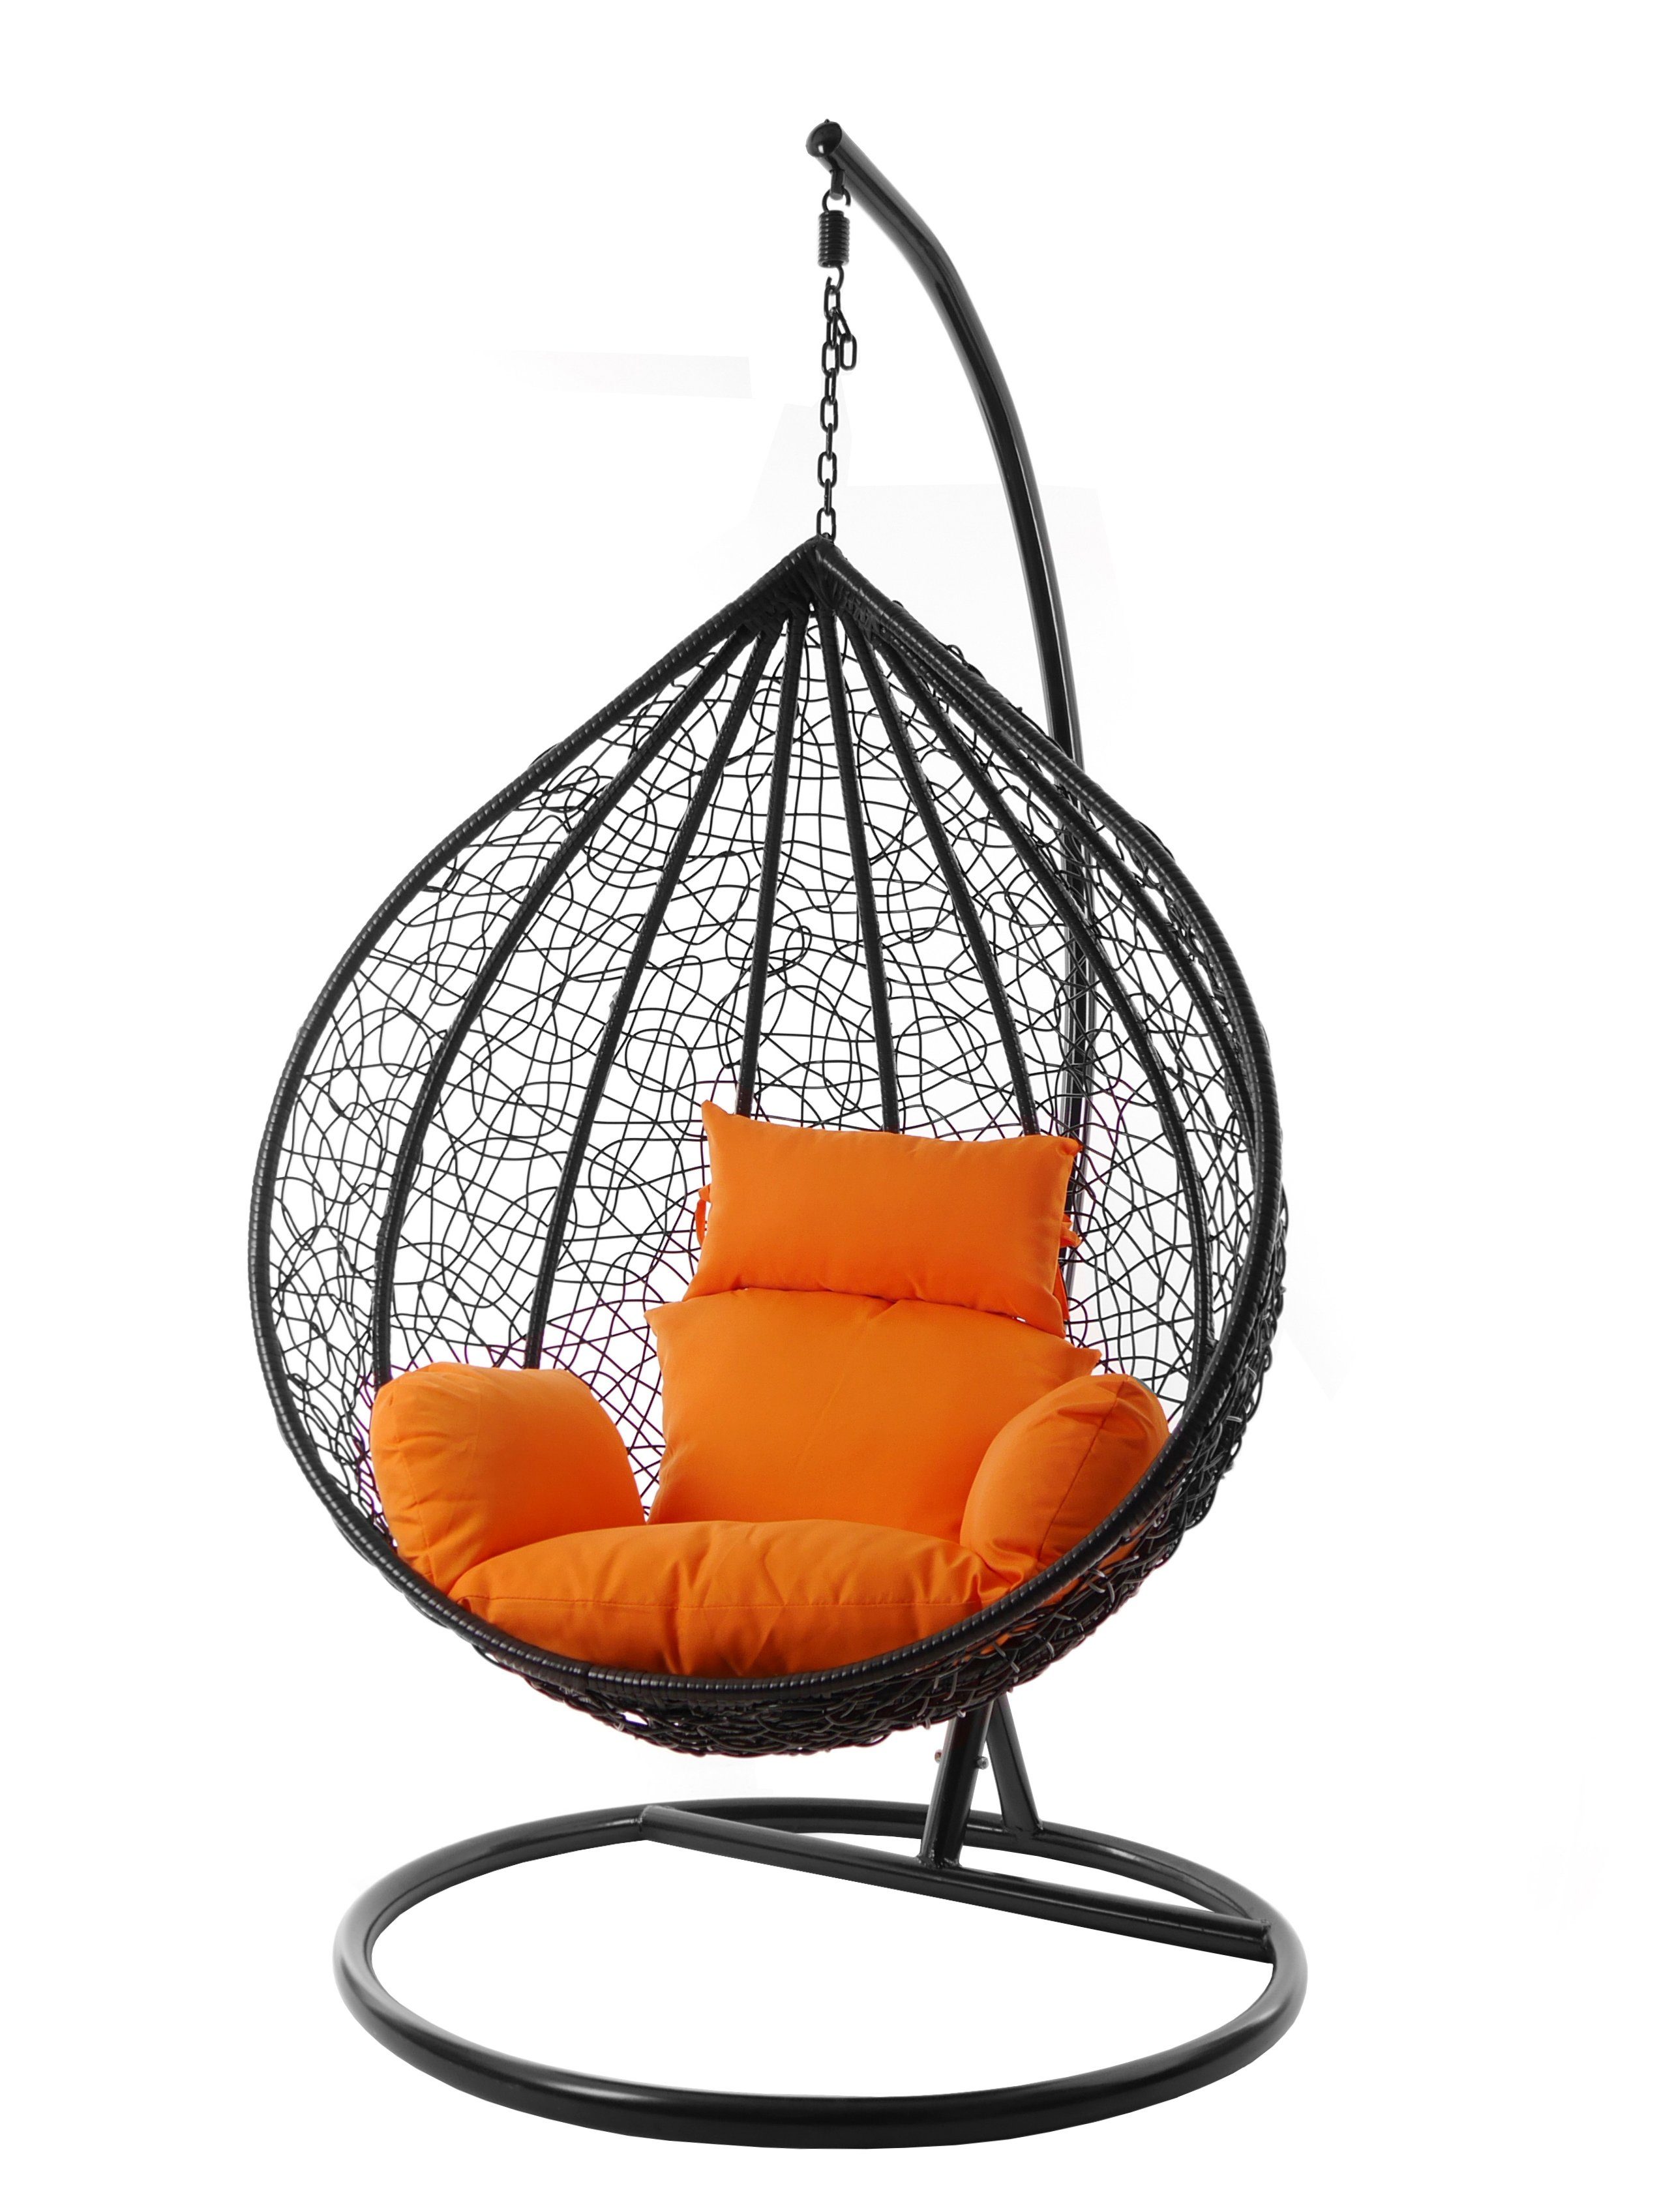 KIDEO Hängesessel Hängesessel Nest-Kissen, verschiedene Swing Gestell Farben inklusive, orange und Kissen MANACOR XXL edel, (3030 Chair, schwarz, tangerine)